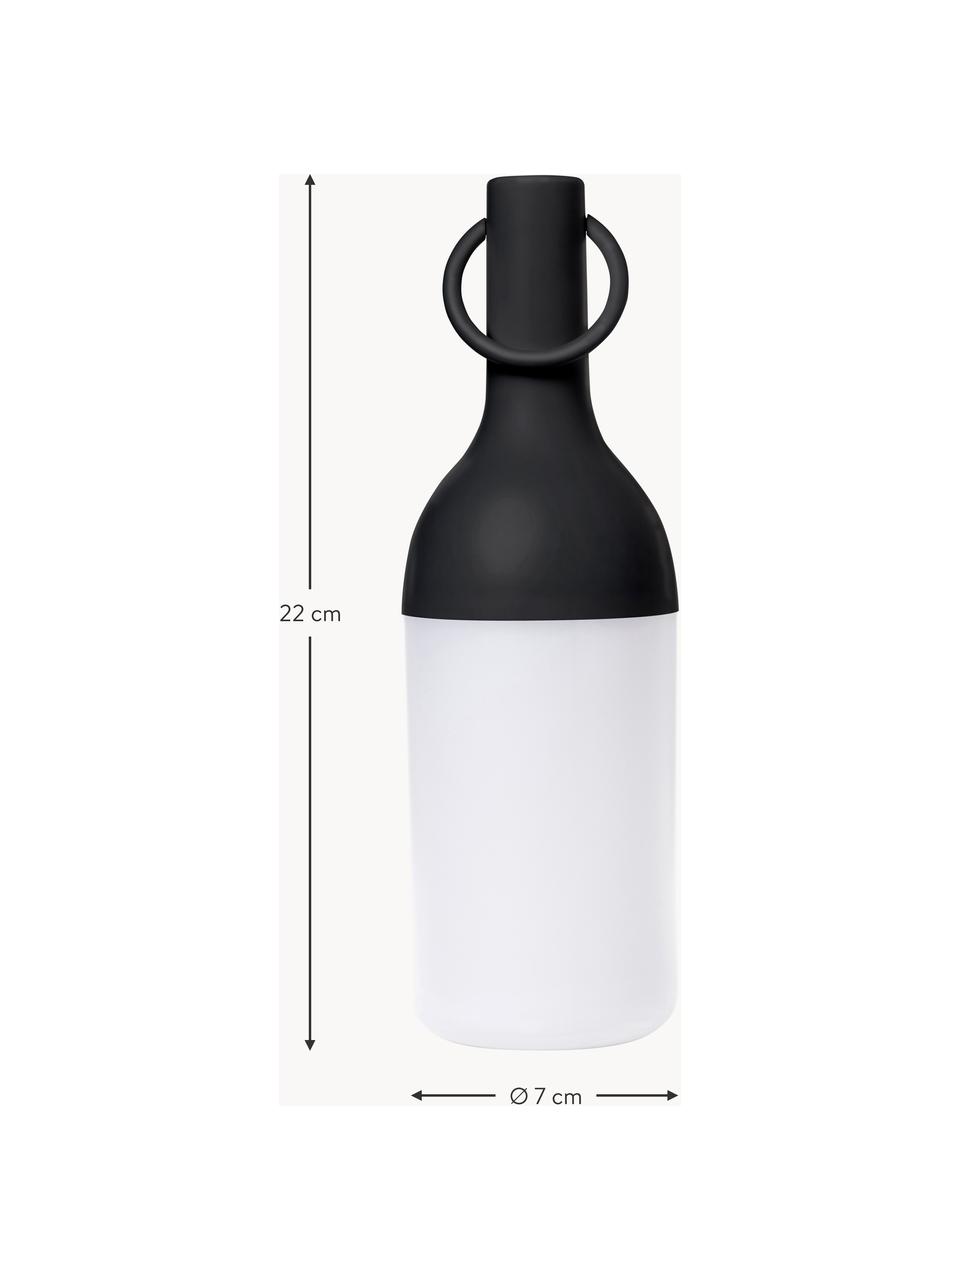 Mobilna lampa zewnętrzna LED z funkcją przyciemniania Elo, 2 szt., Czarny, biały, we wzór, Ø 7 x W 22 cm